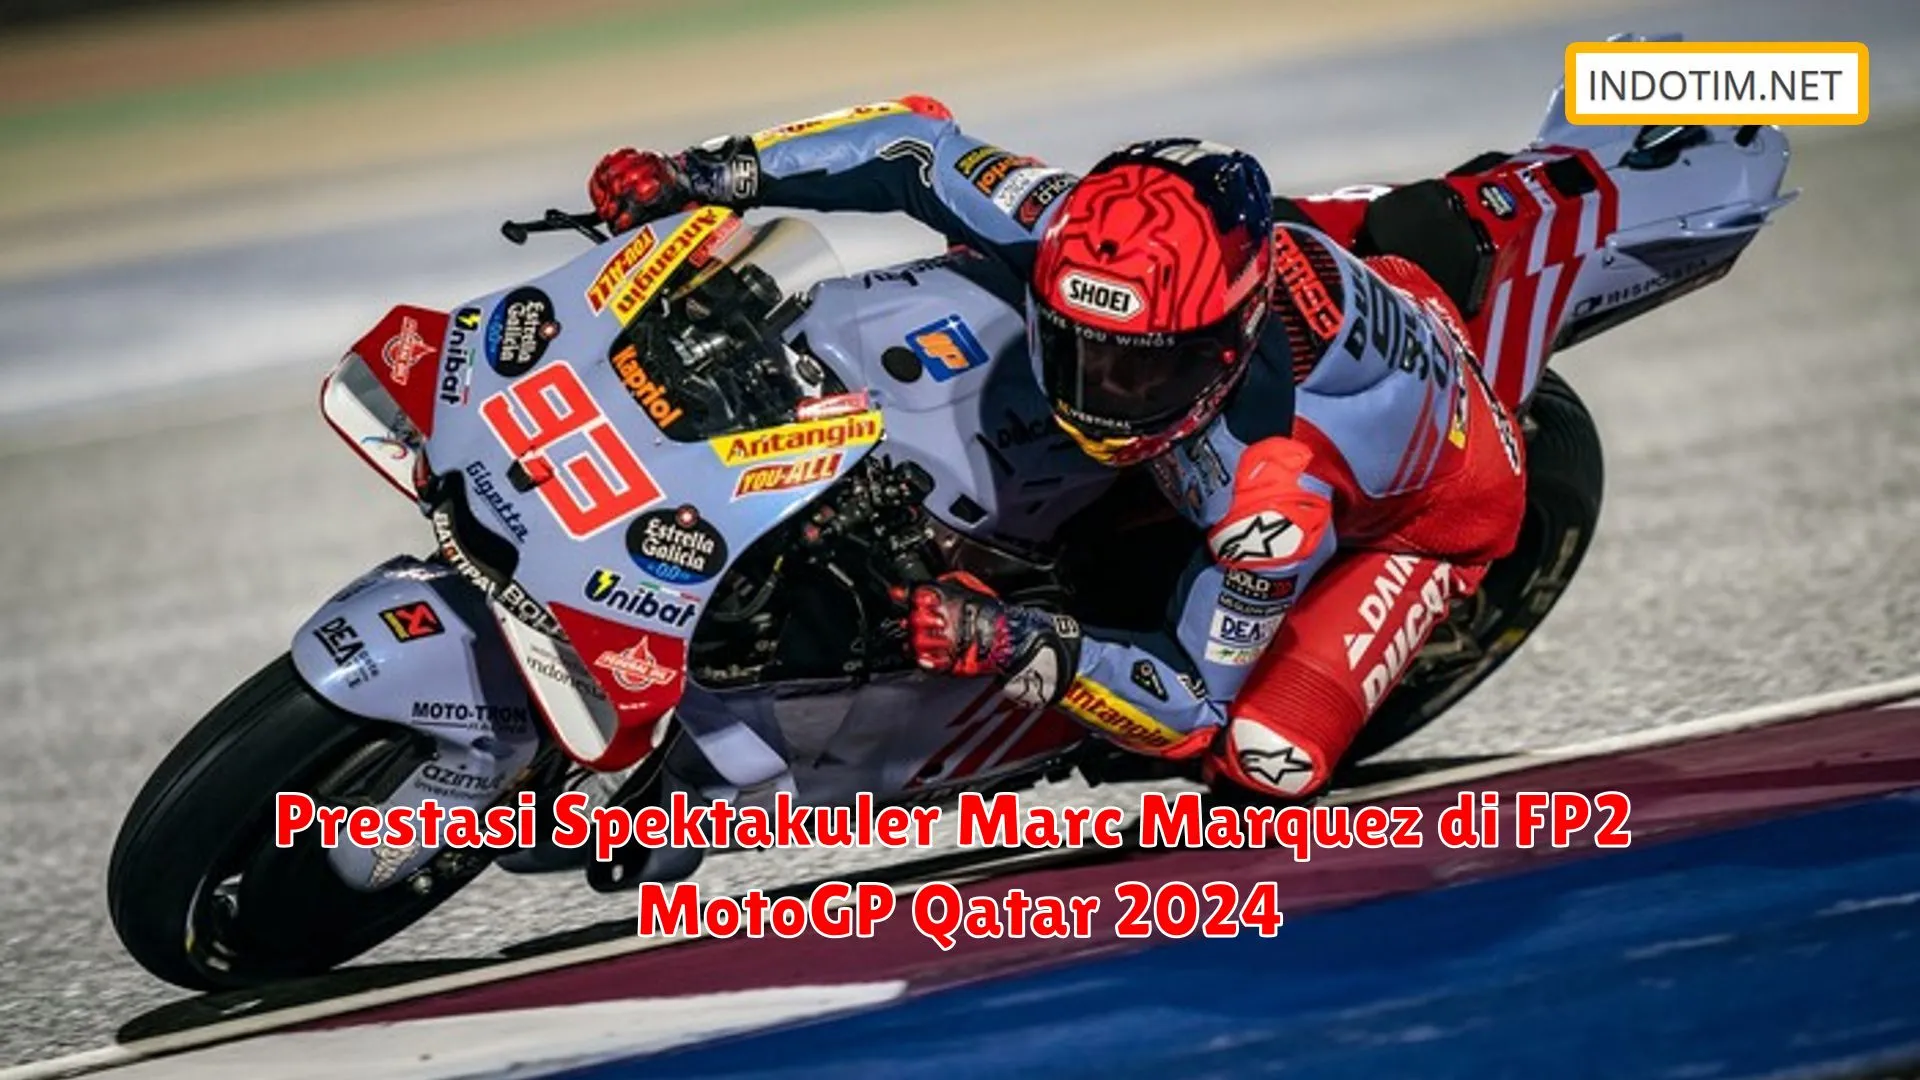 Prestasi Spektakuler Marc Marquez di FP2 MotoGP Qatar 2024